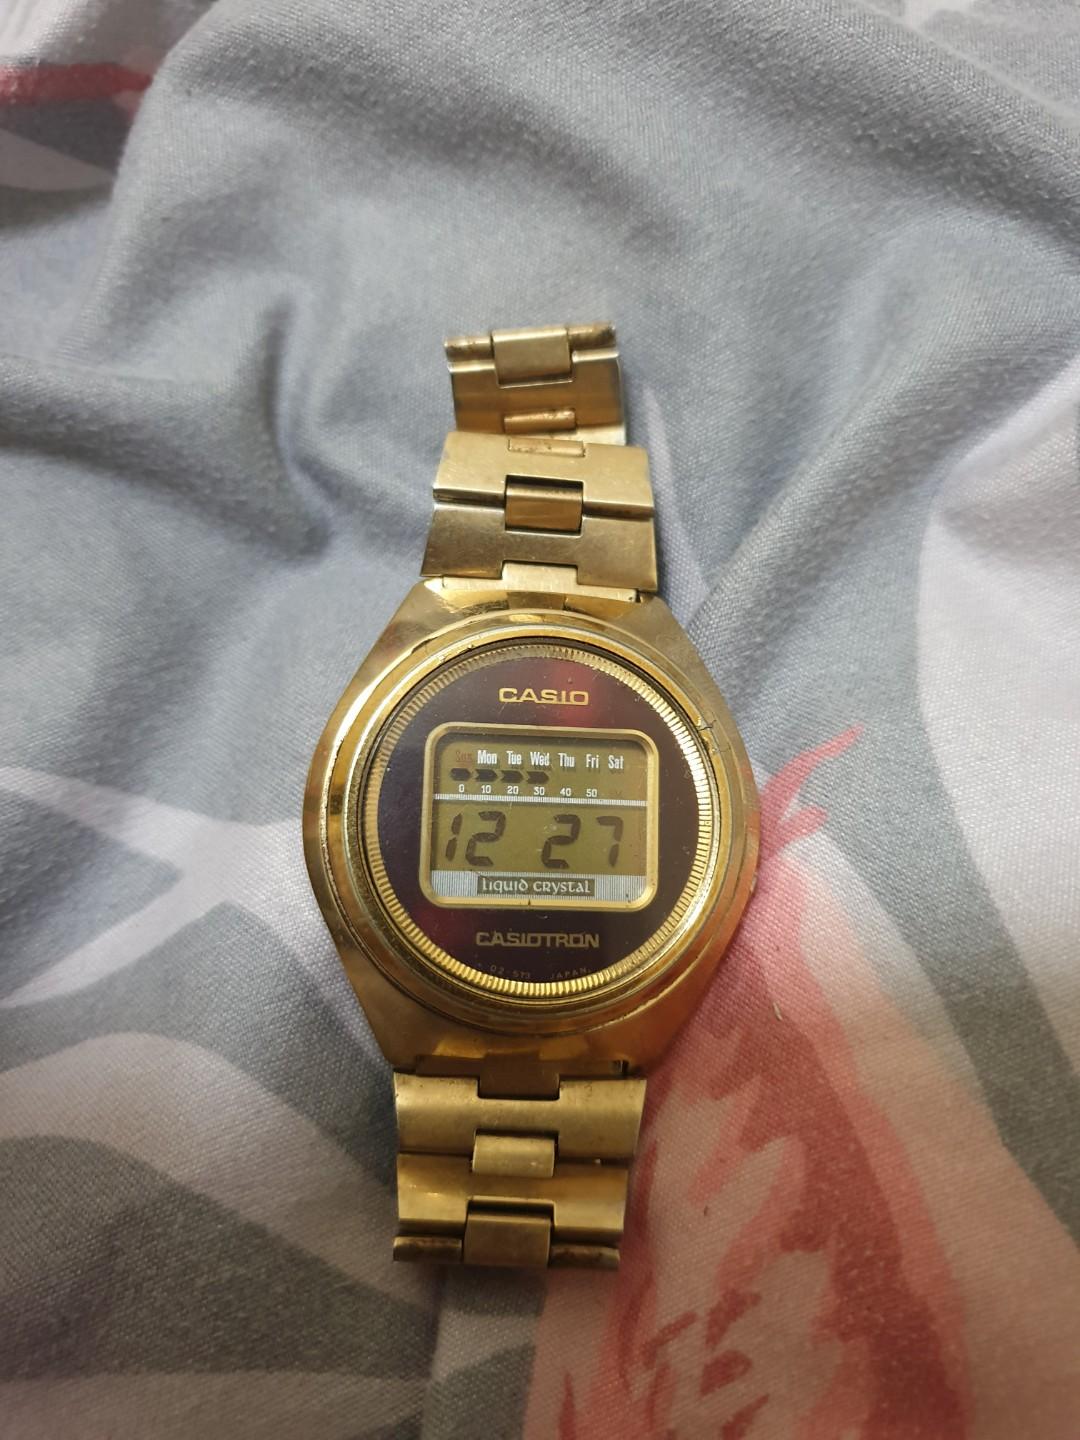 70s digital watch